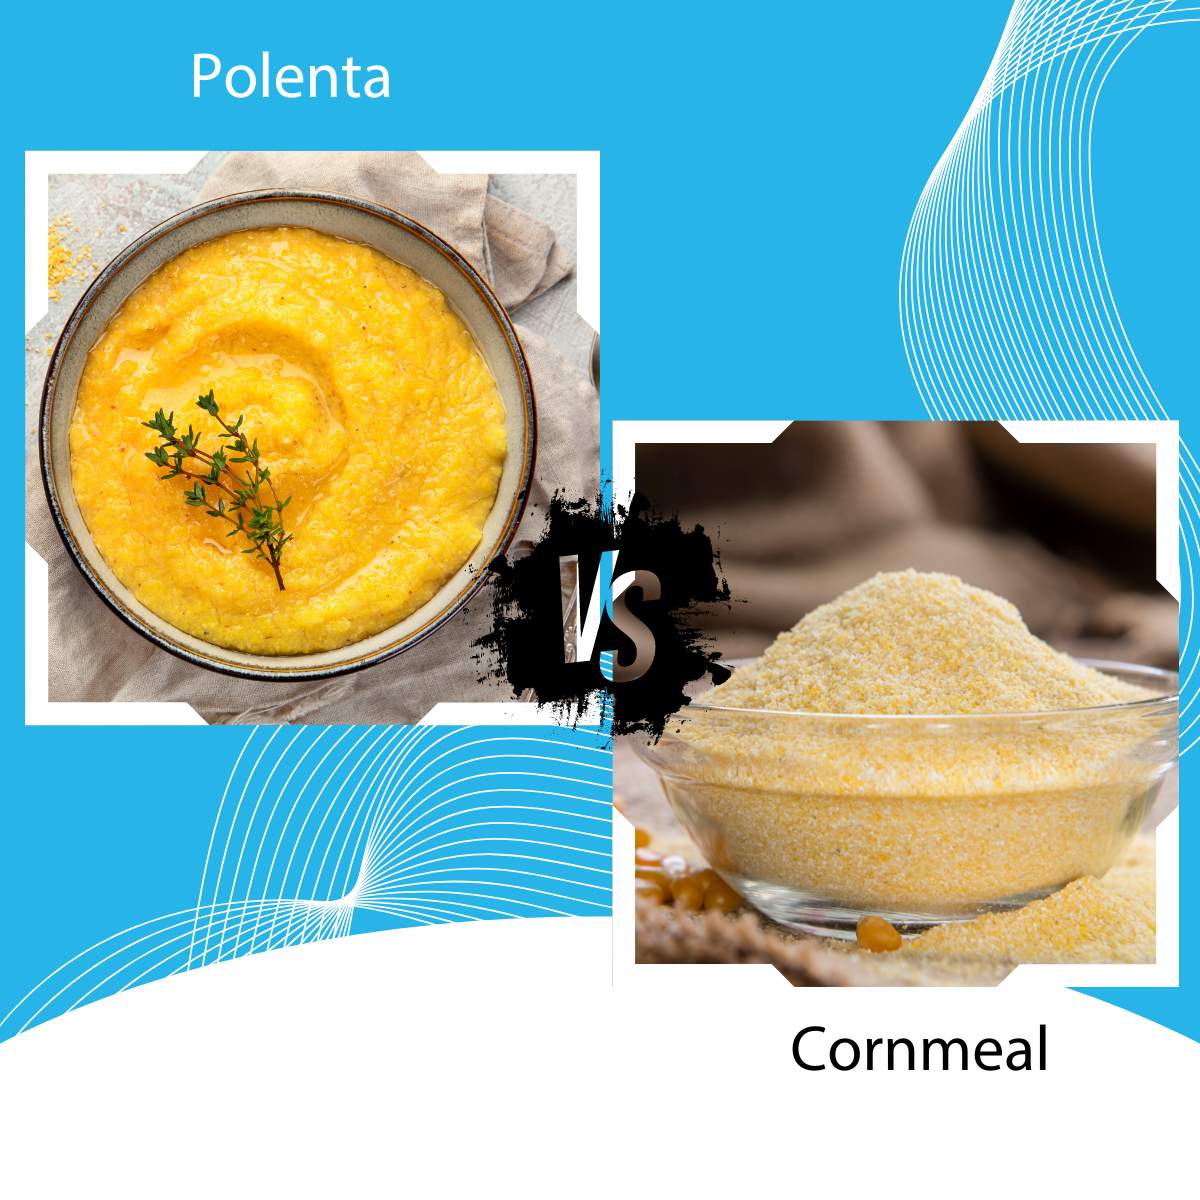 Polenta vs Cornmeal